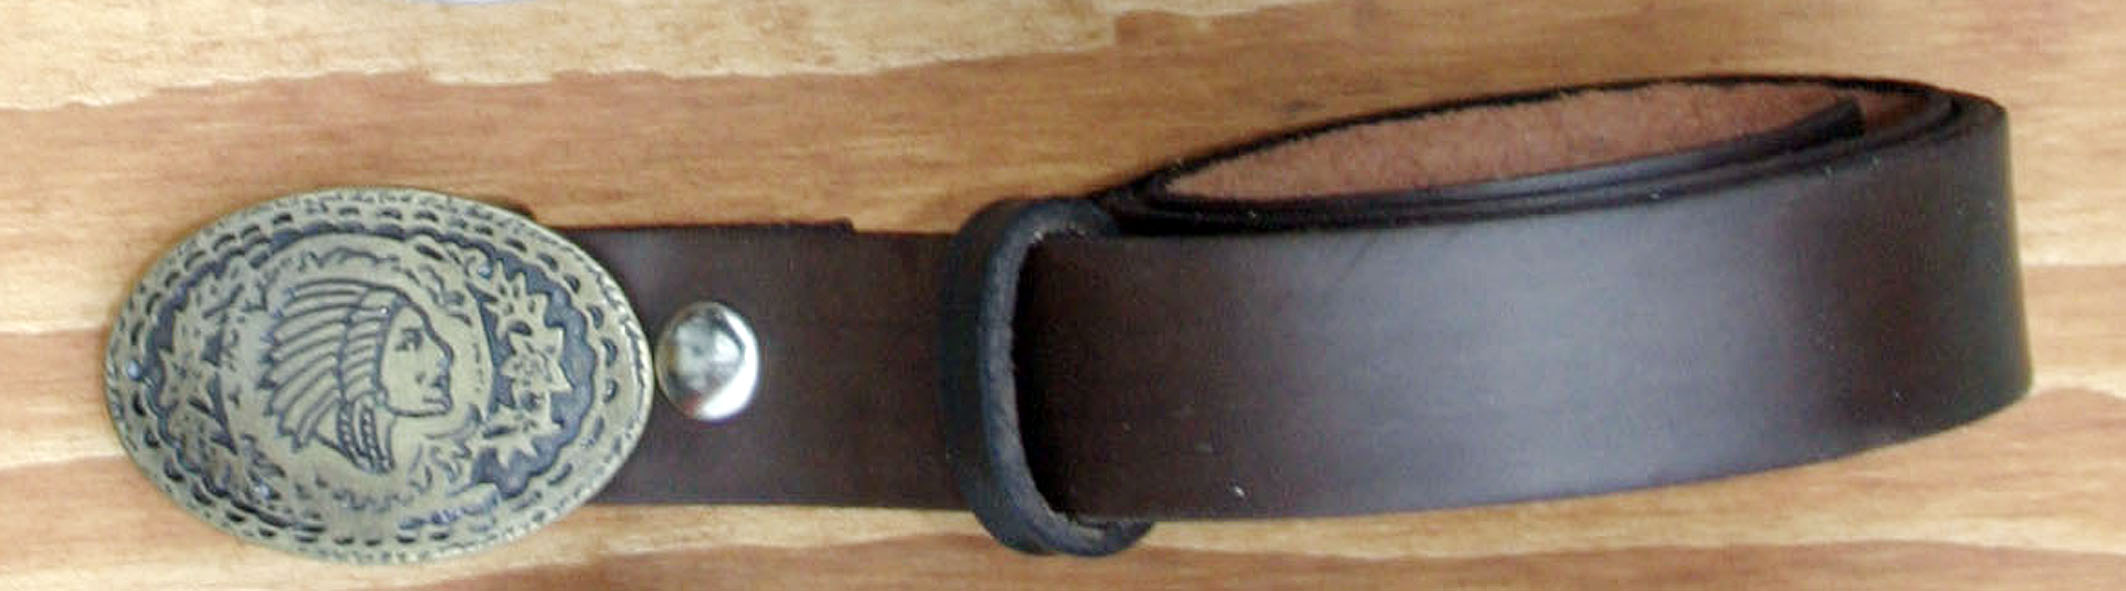 Cintura da Bambino  da 3 Cm. in  Pelle Morbida.  - prodotto esaurito-